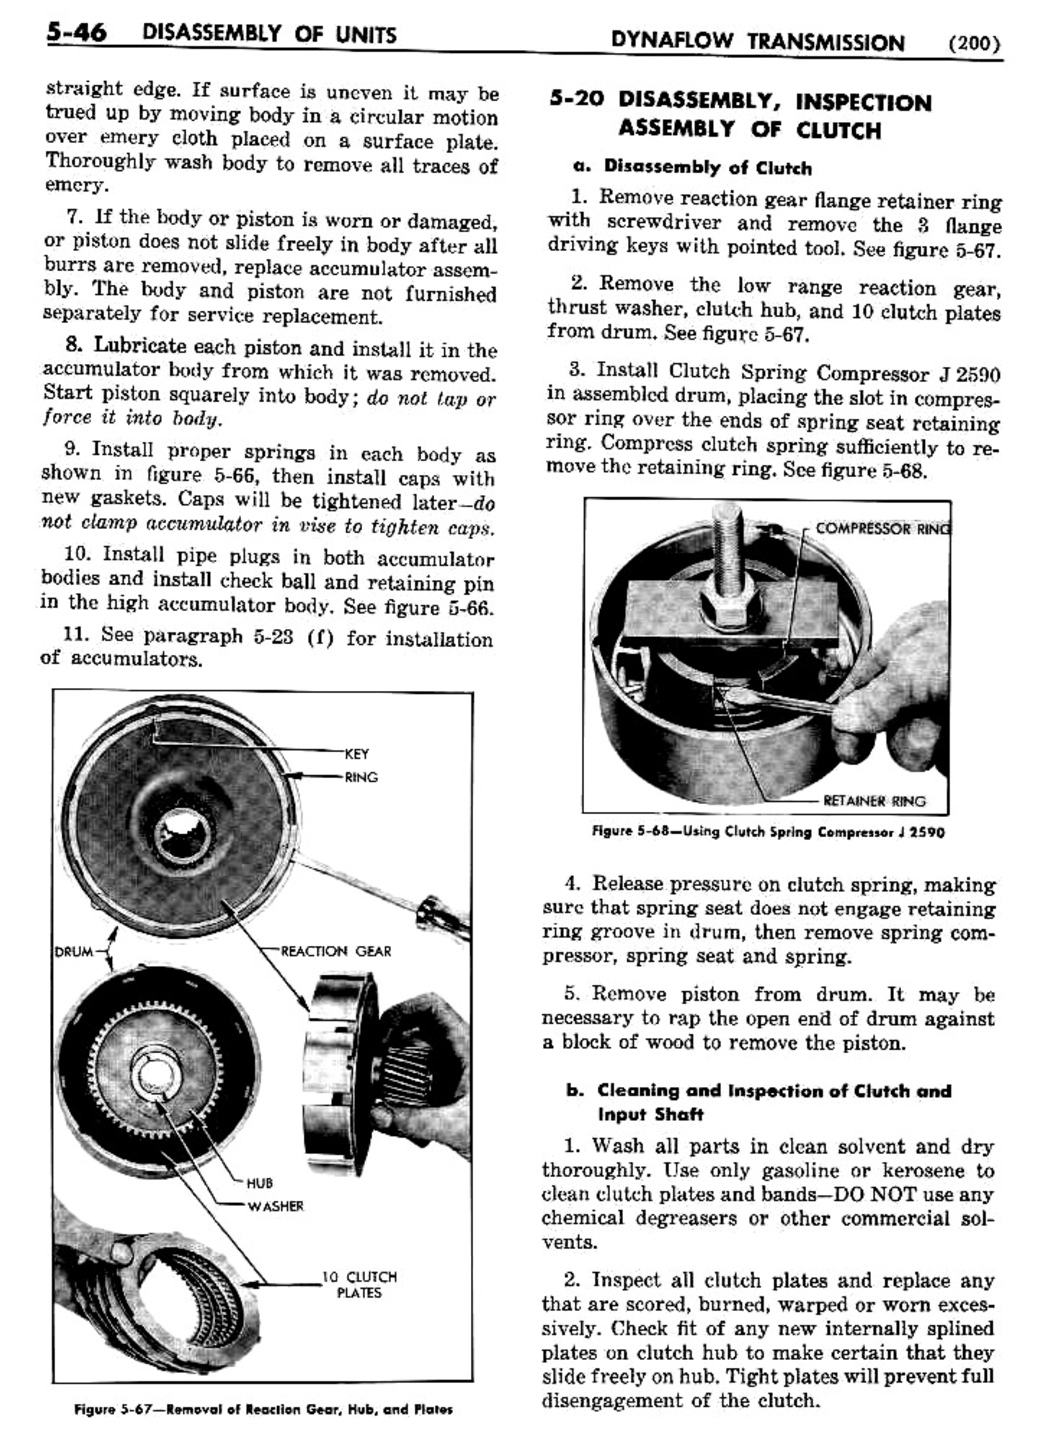 n_06 1954 Buick Shop Manual - Dynaflow-046-046.jpg